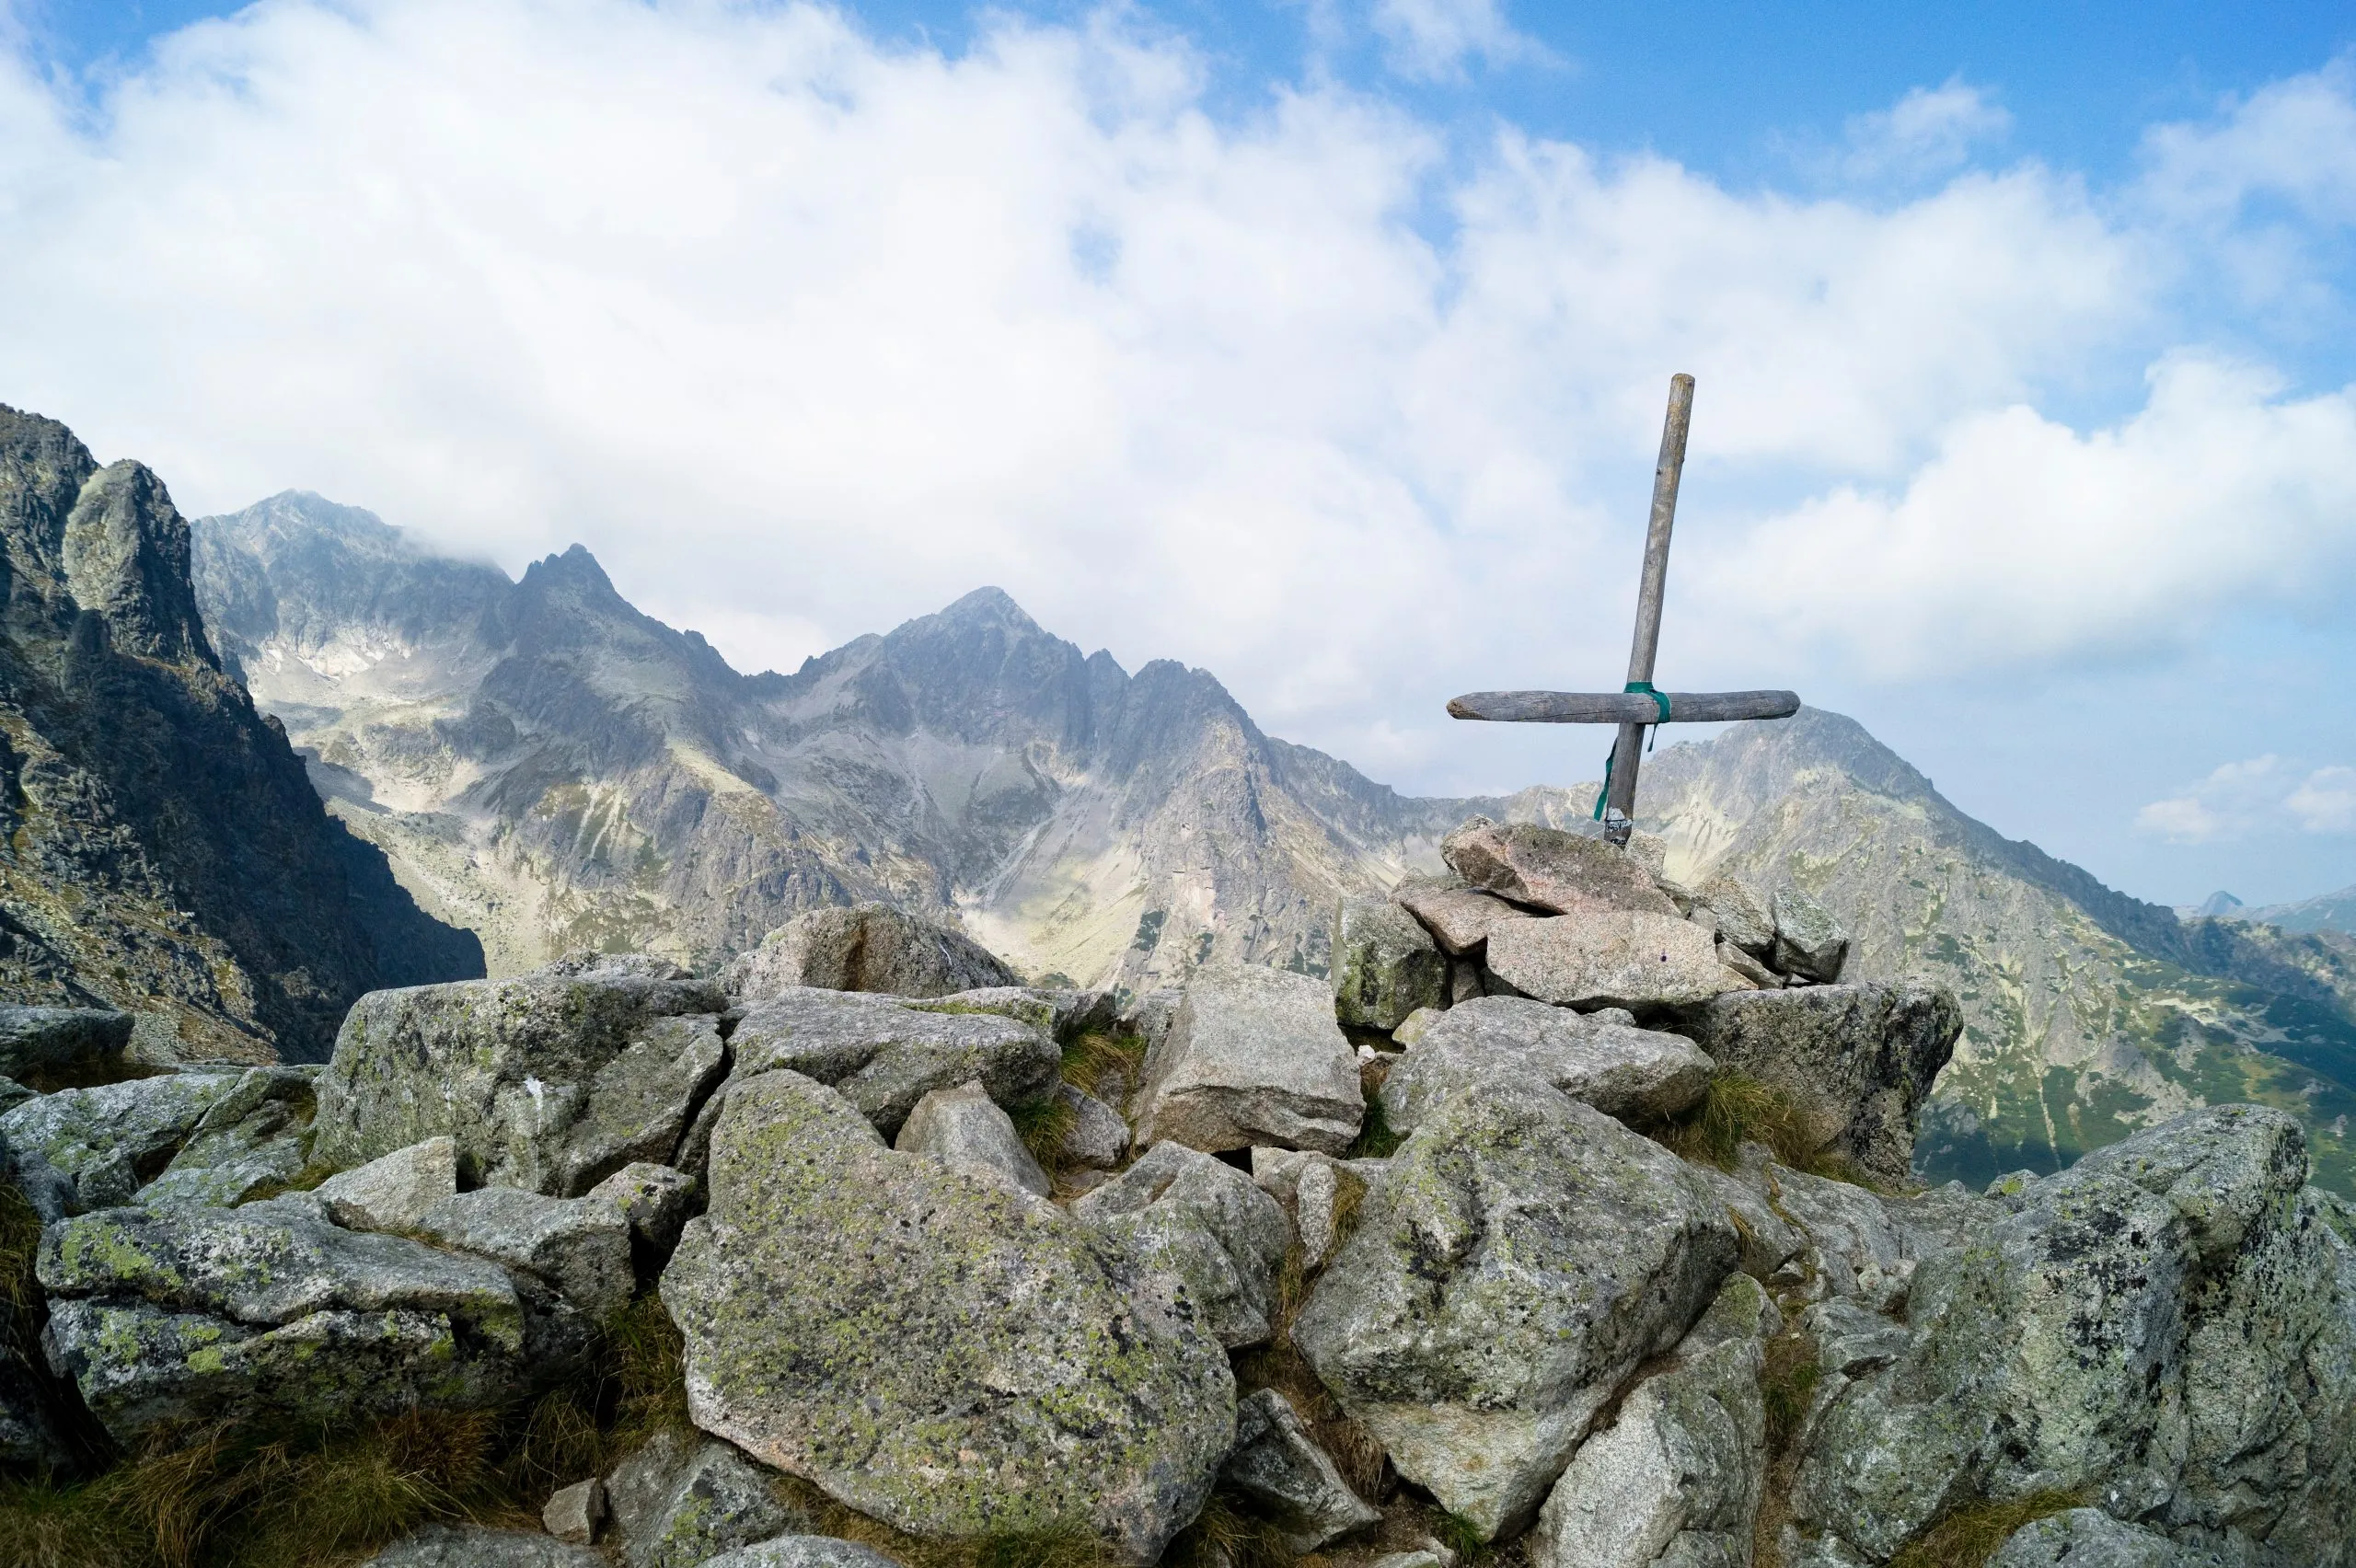 Панорама горных вершин Татр, вид с вершины горы Велка Свистовка. Деревянный крест обозначает вершину. Словакия